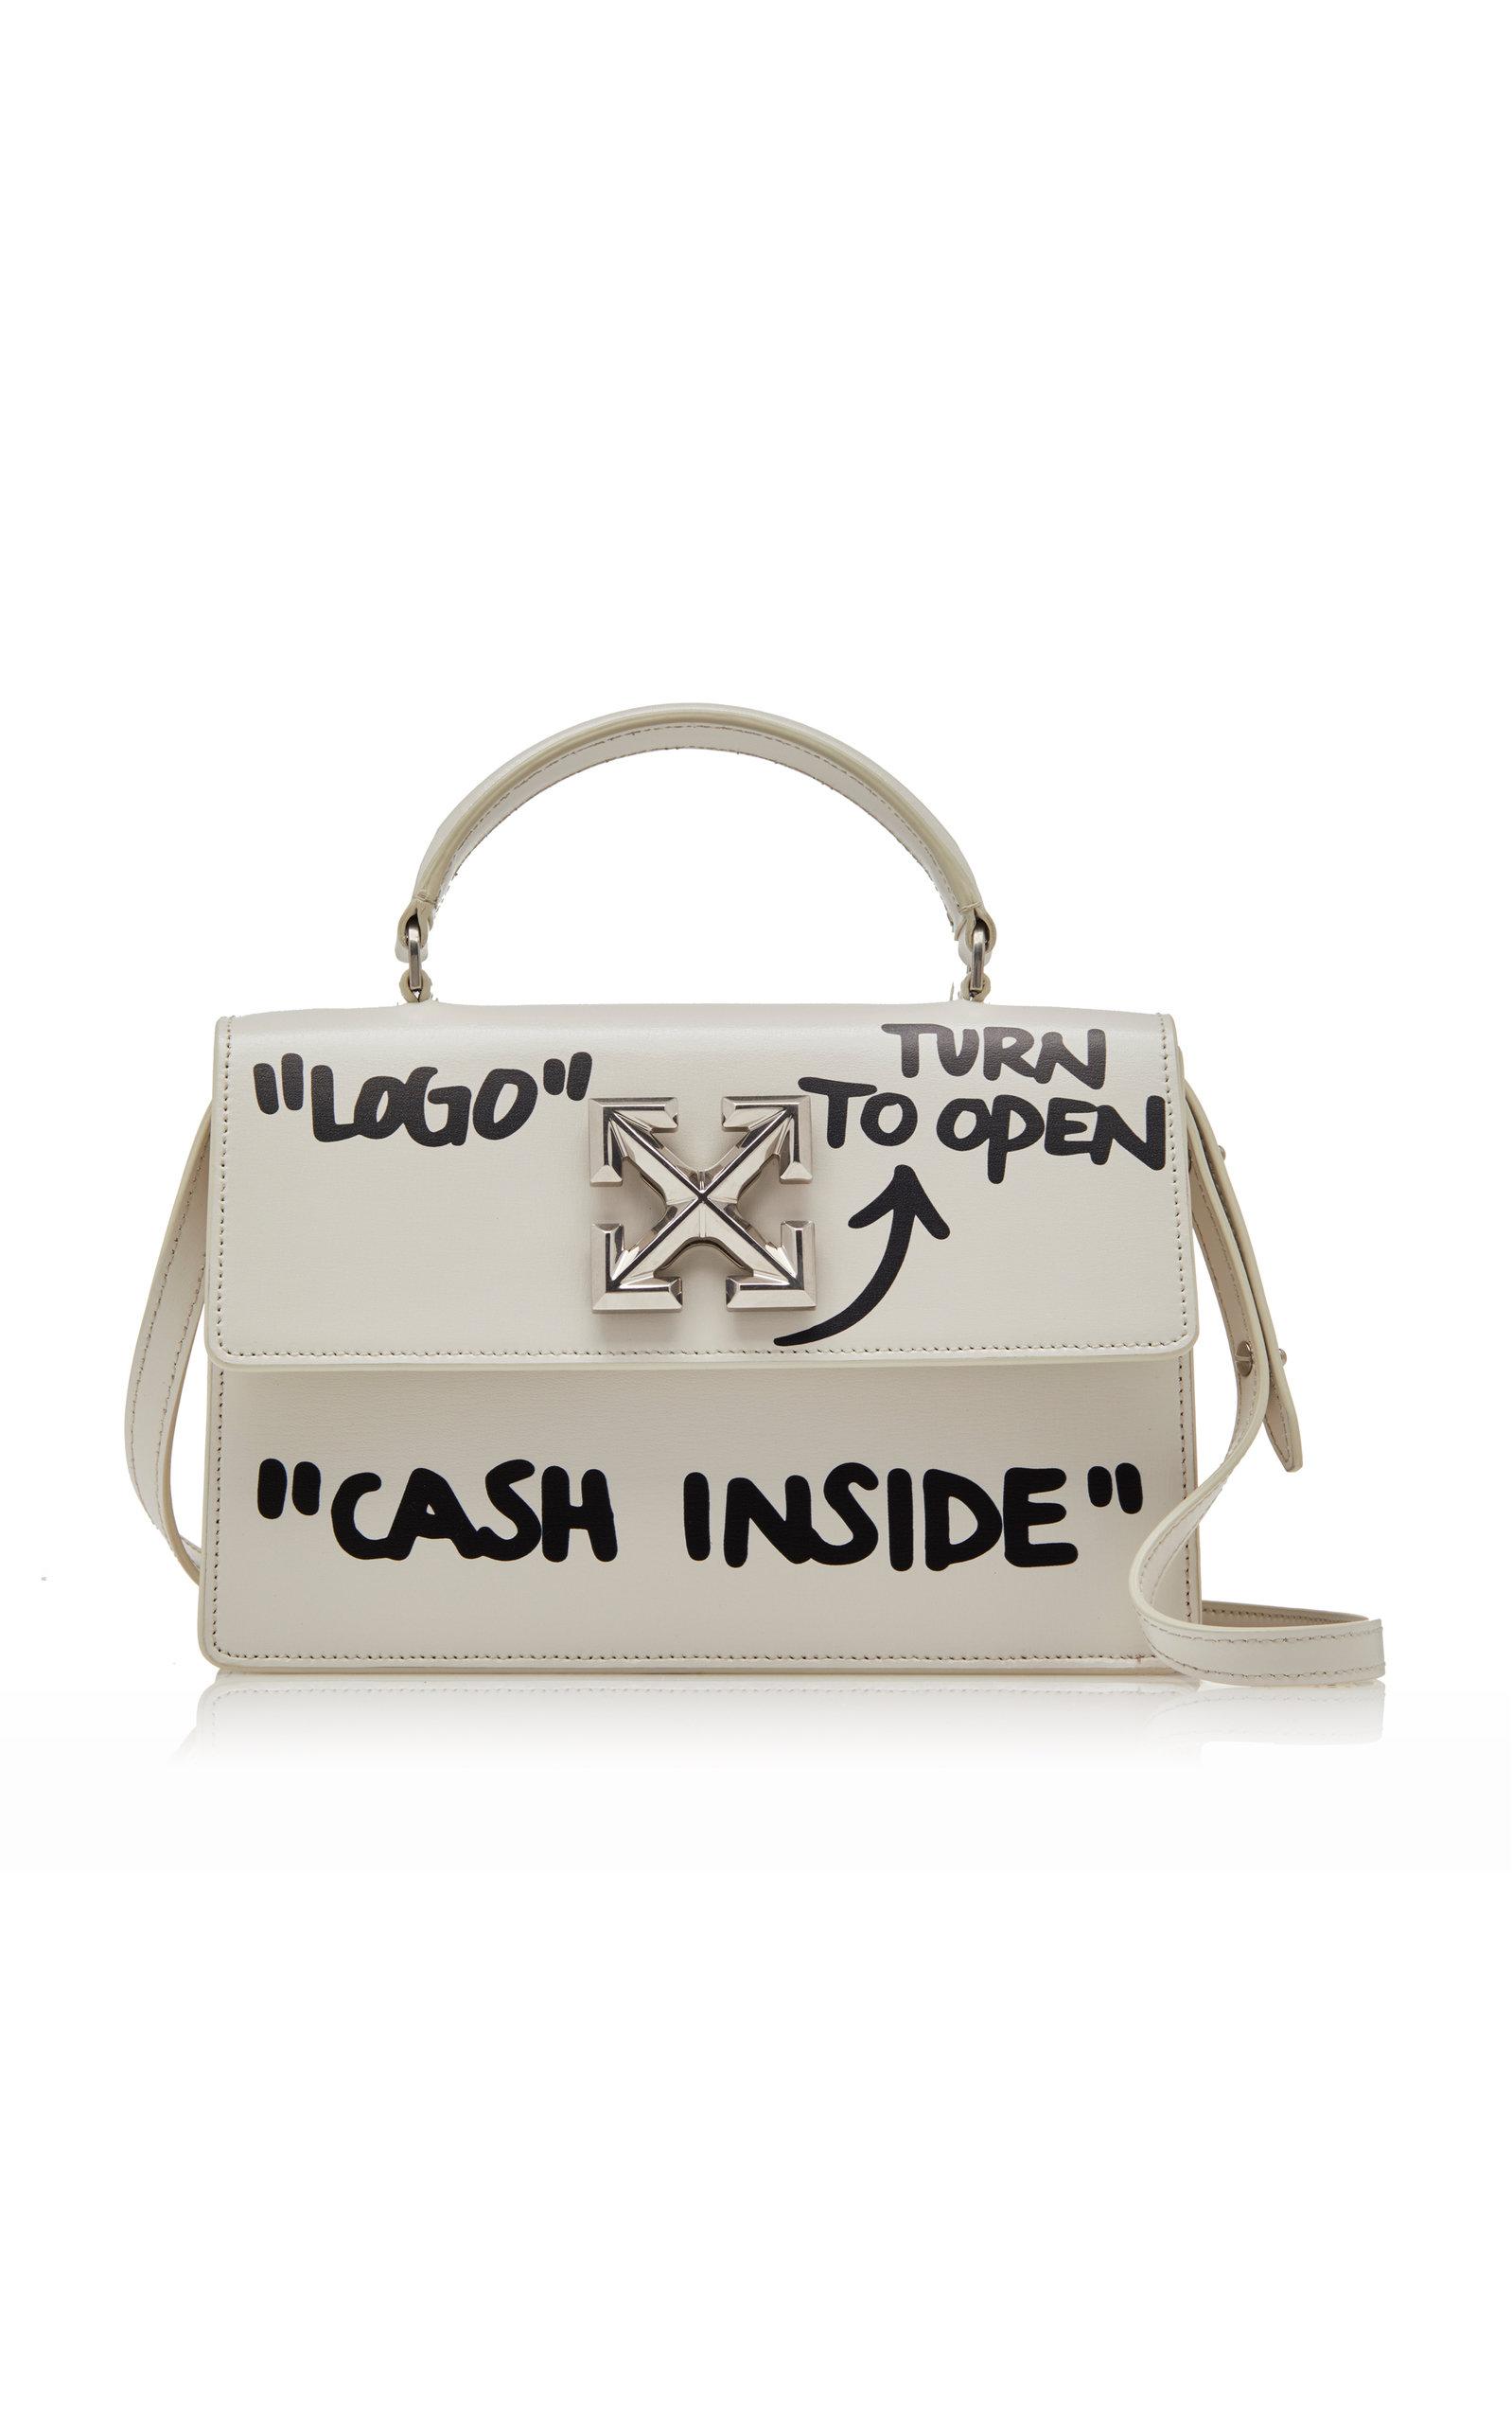 Off-White™ - Jitney 1.4 Cash Inside Crossbody Bag